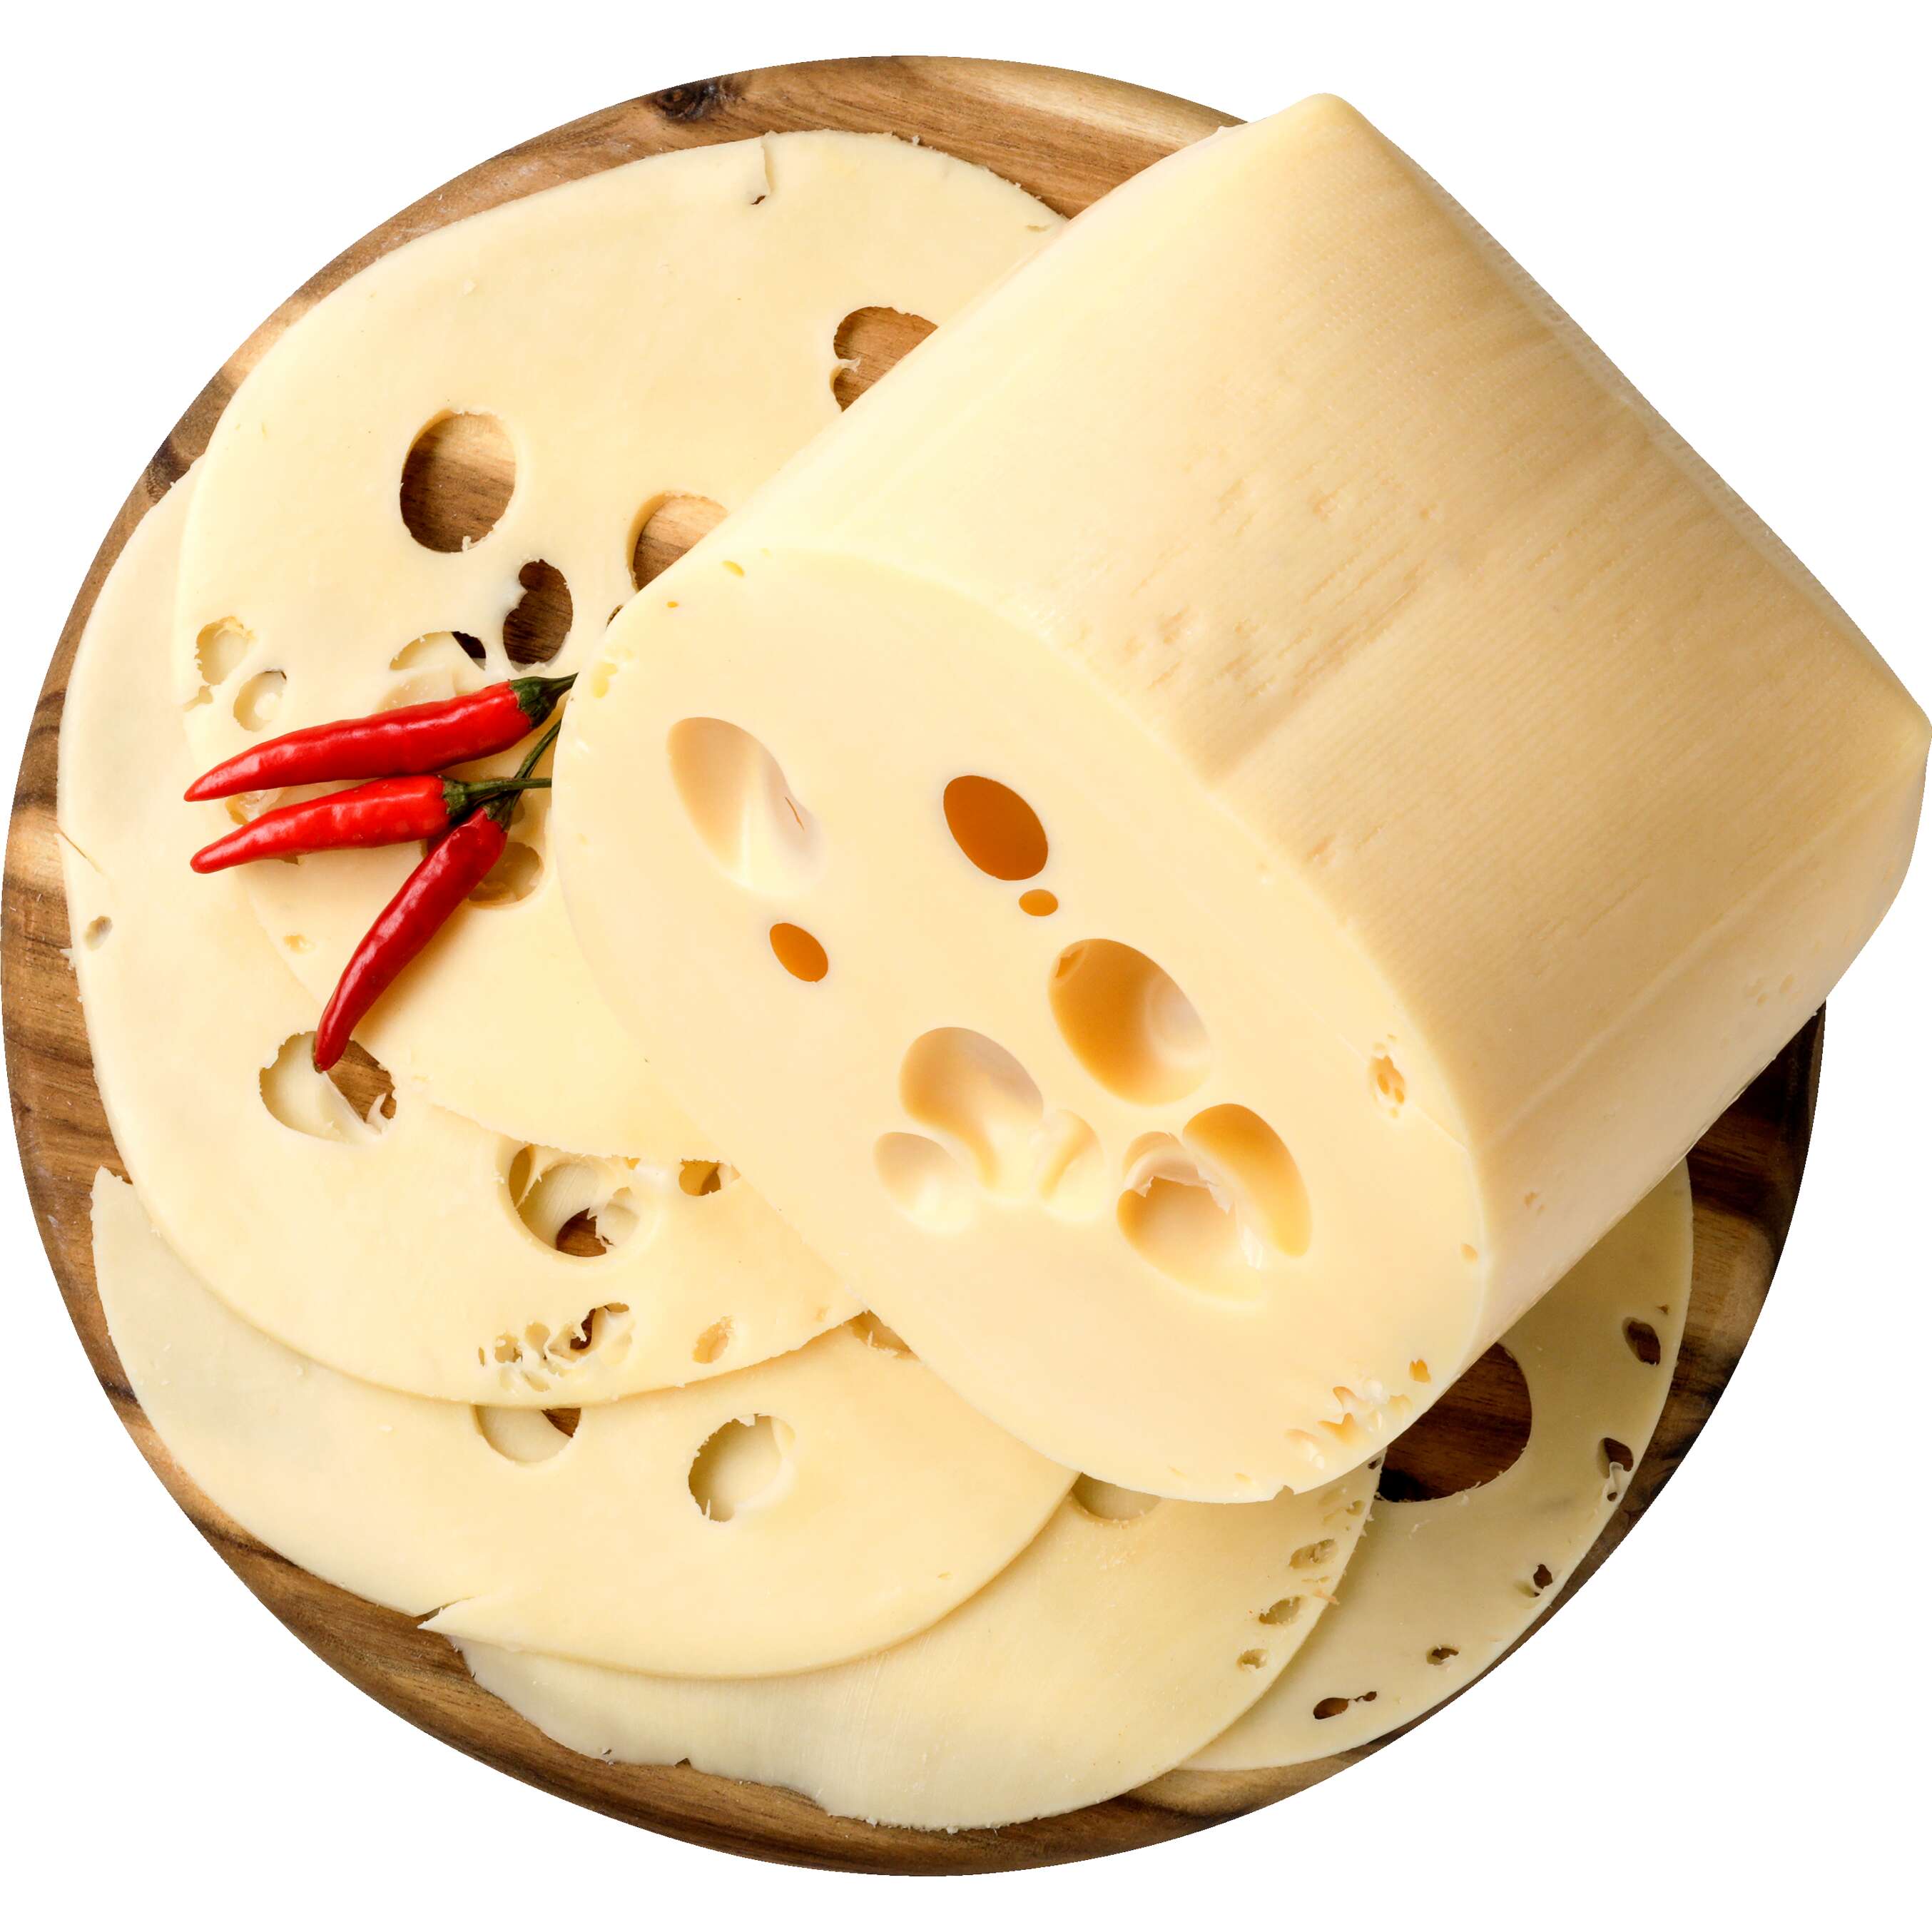 Zobrazit nabídku Krolewski Přírodní polotvrdý sýr s oky